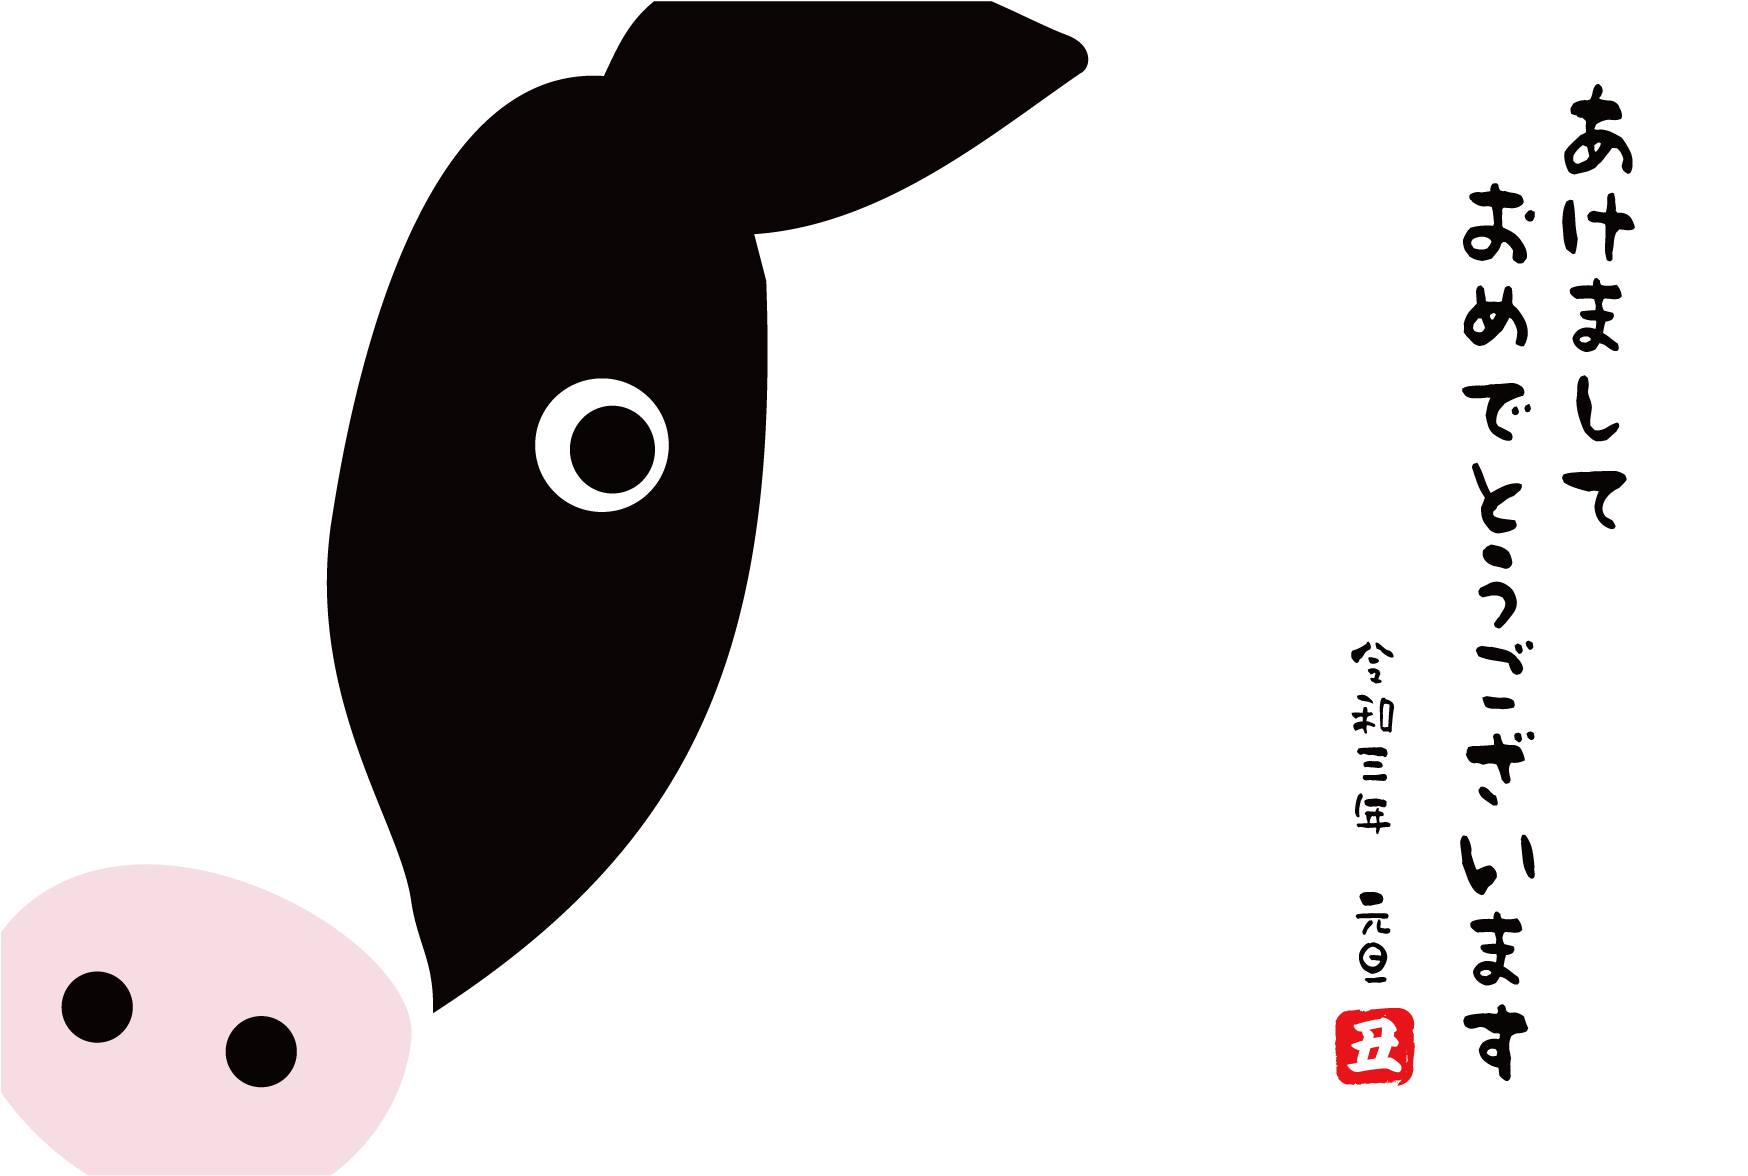 21ウシ 丑 さんイラスト年賀状 無料 Vol 1 福井県小浜市のヨコハマヤ